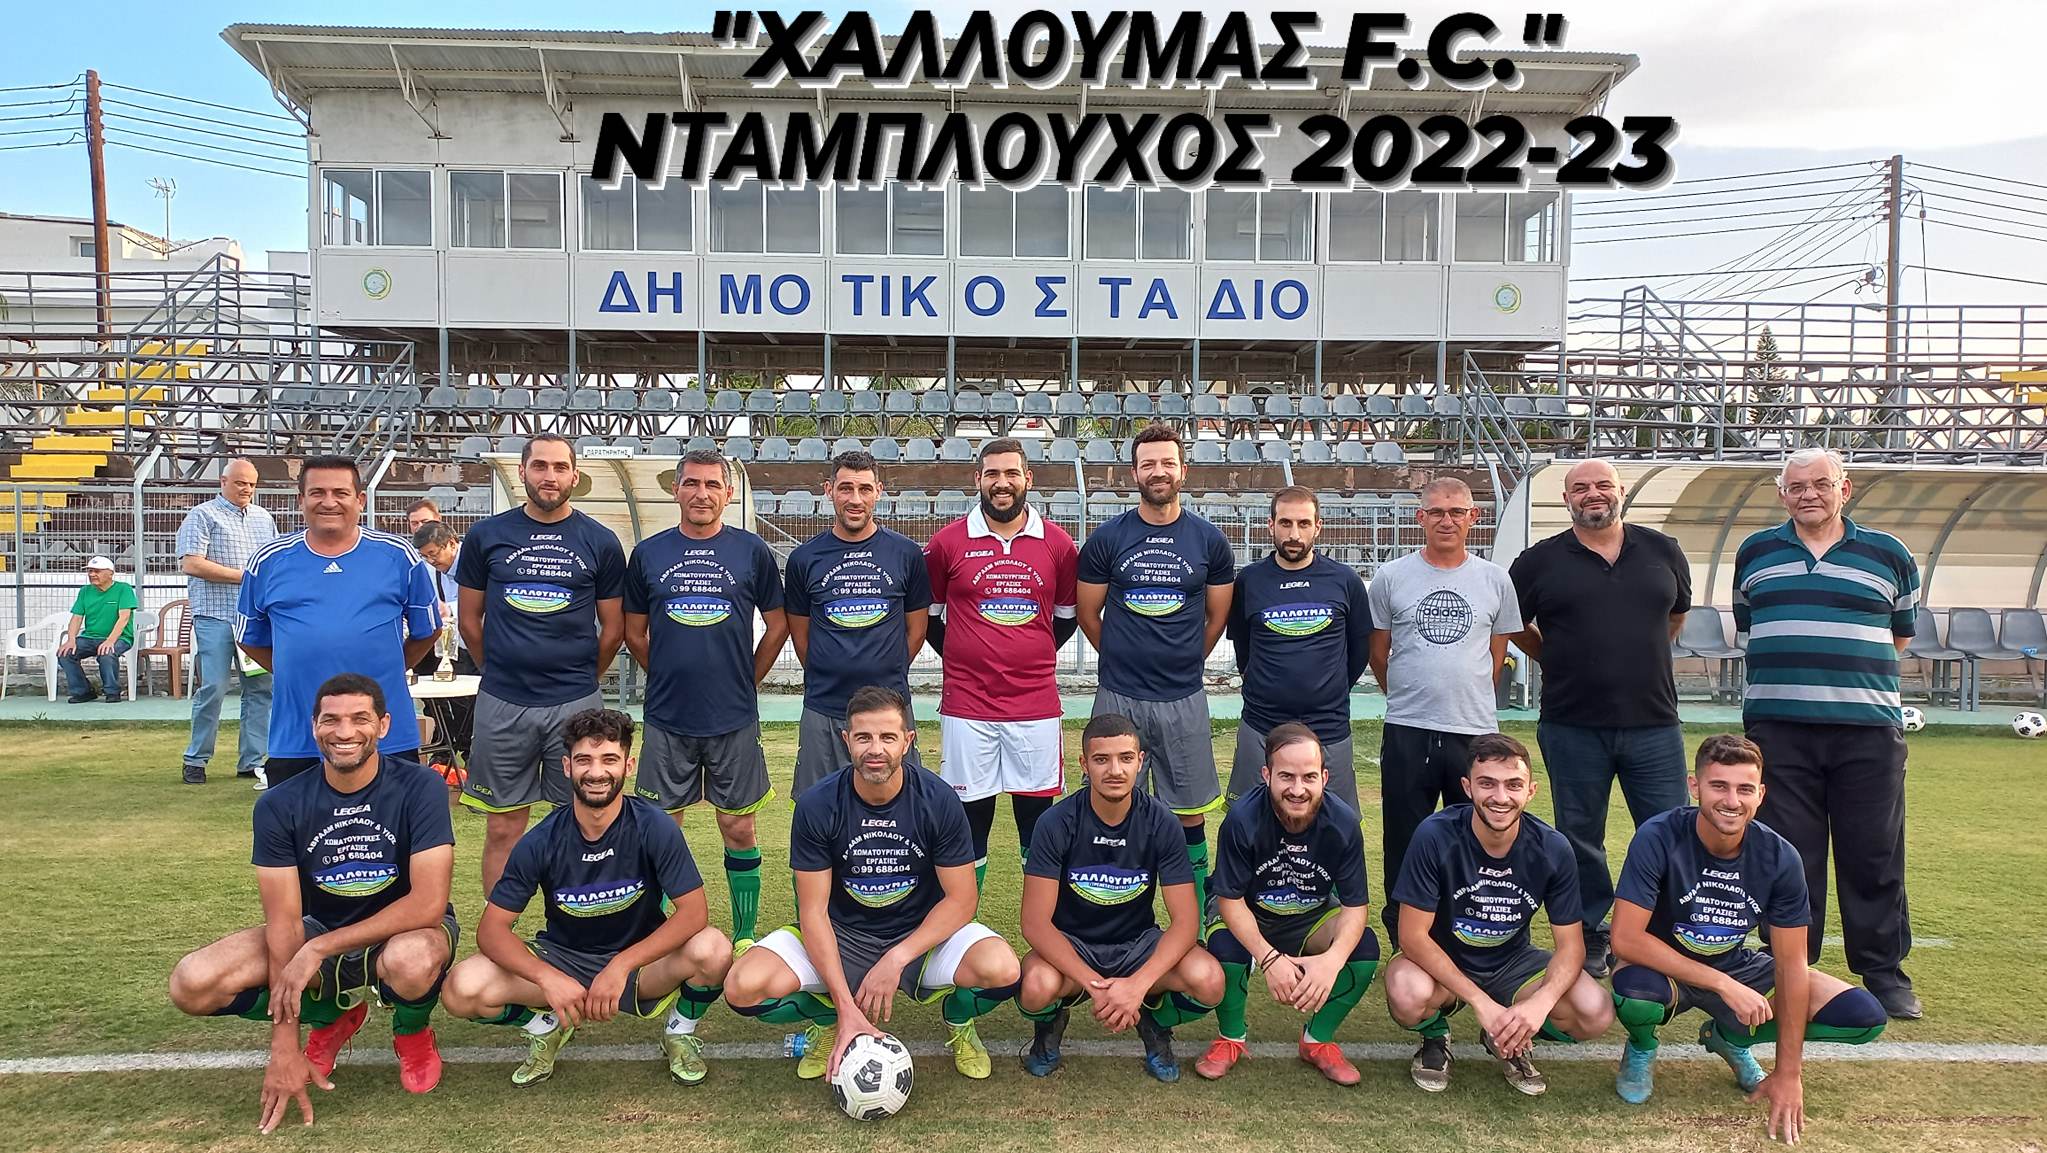 Νταμπλούχος ΟΕΠΛ η Χαλλουμάς FC (photos)